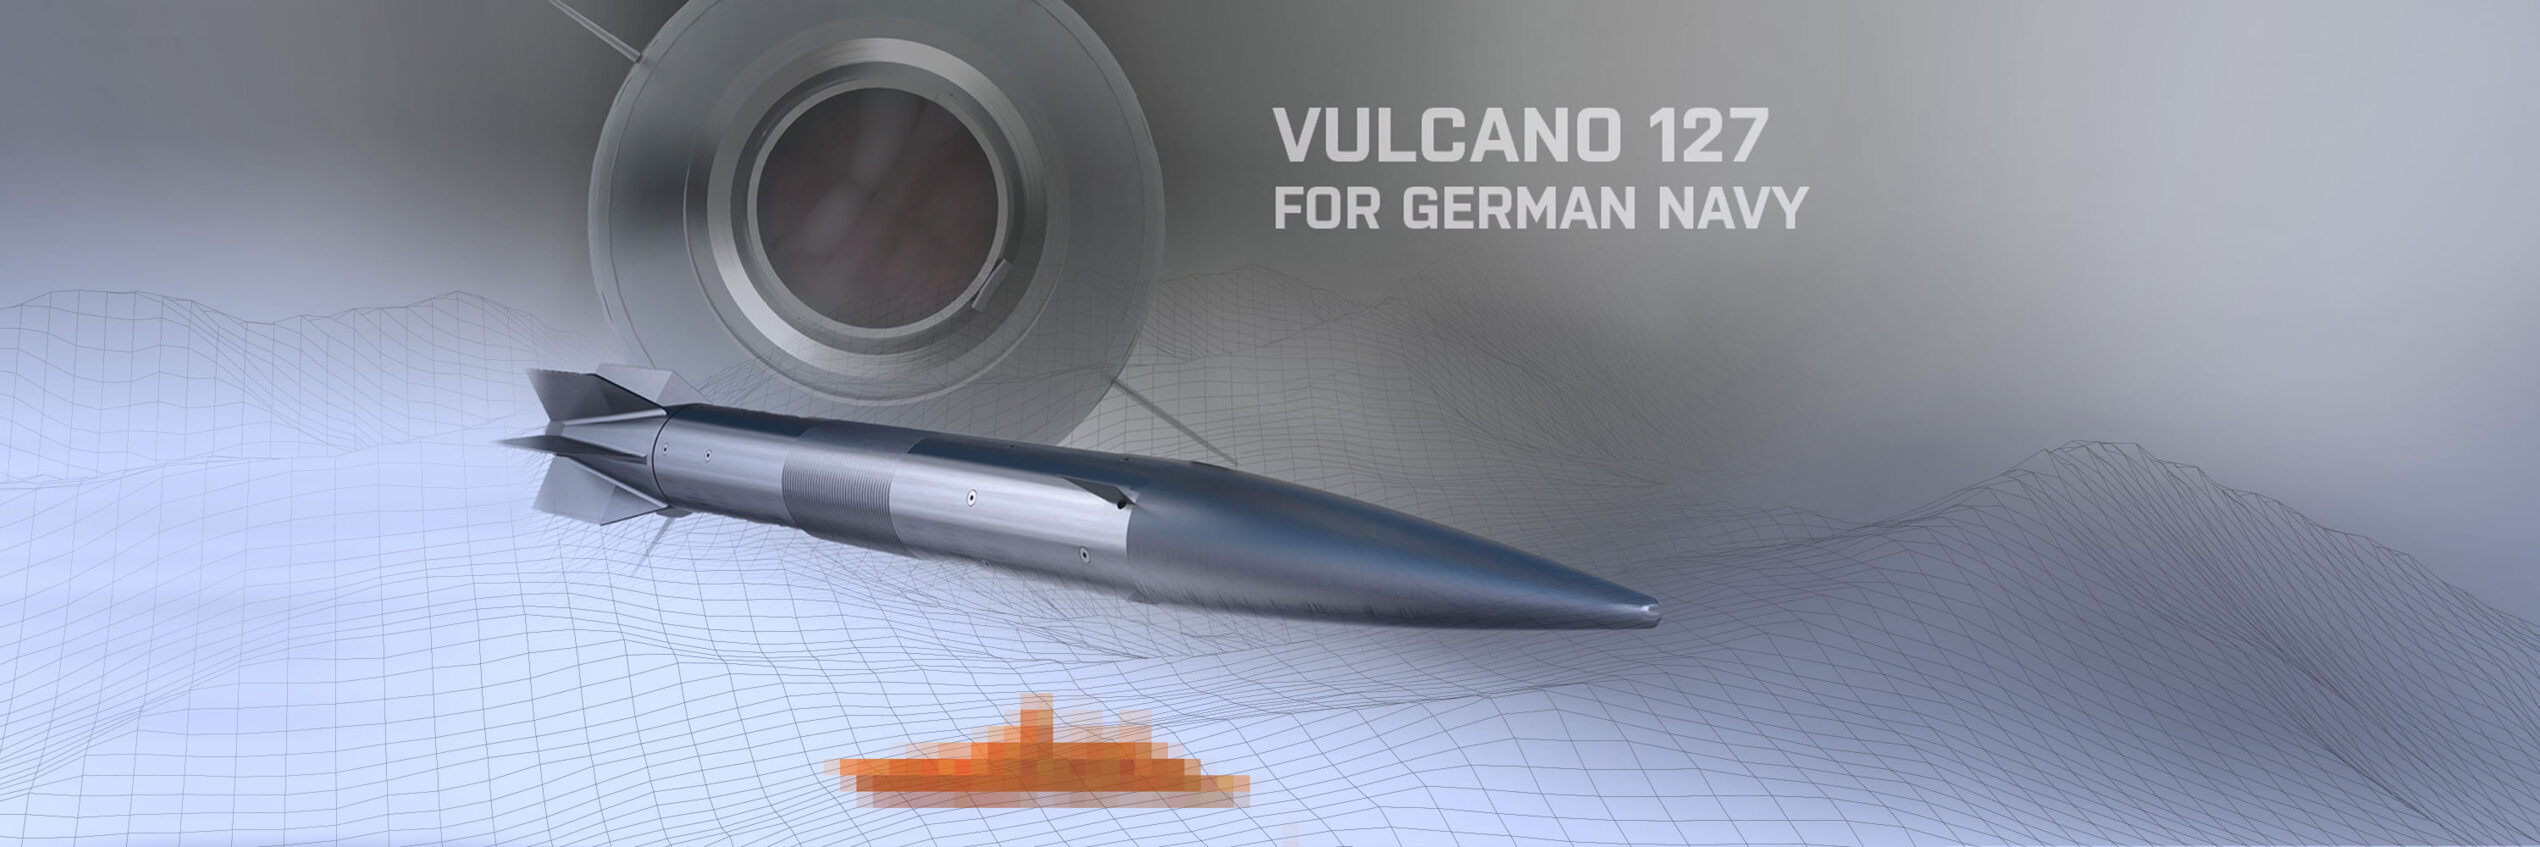 Lenkmunition Vulcano 127 von Diehl Defence und Leonardo für die deutsche Marine